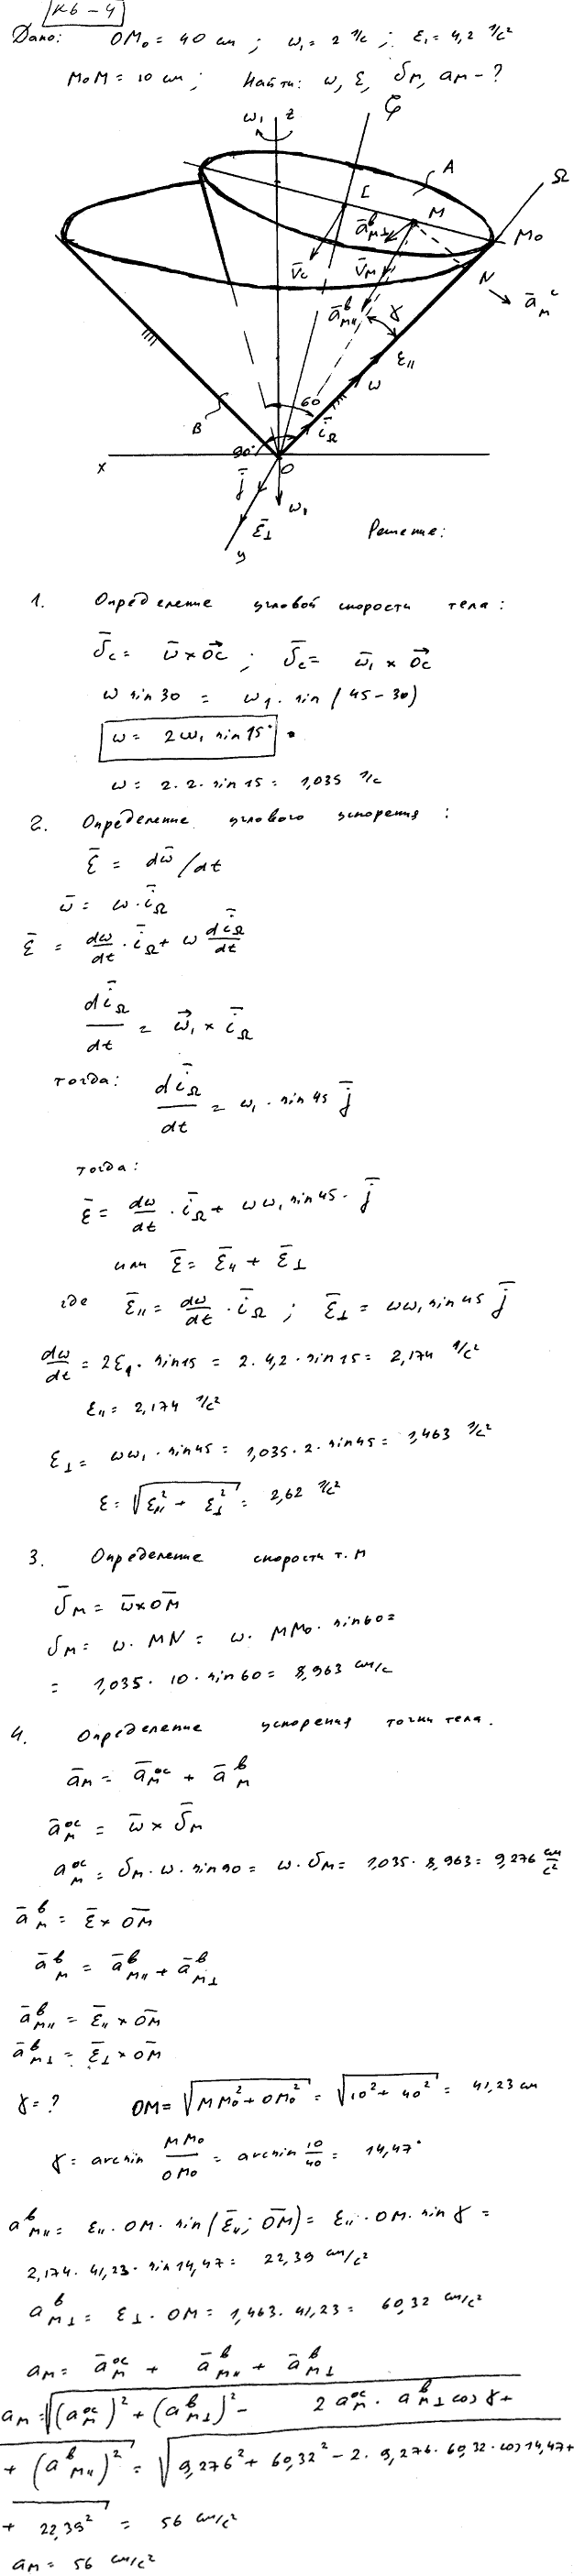 Задание К.6 вариант 4. OM0=40 см; ω1=2,0 рад/с; ε1=4,2 рад/с^2; M0M=10 см